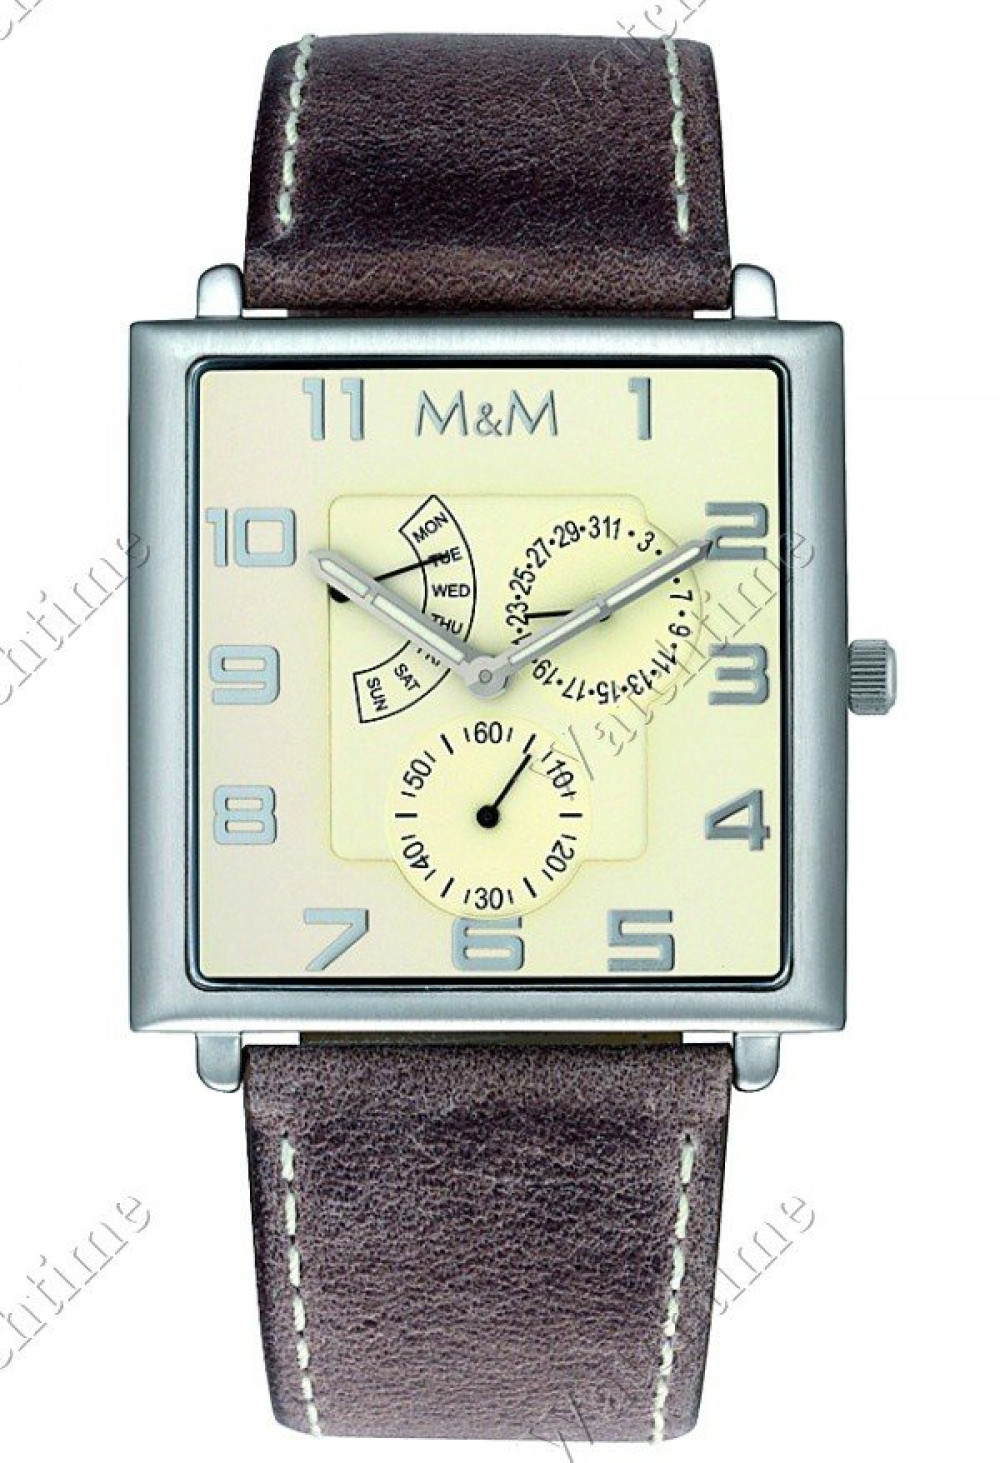 Zegarek firmy M&M Germany, model Unlimited